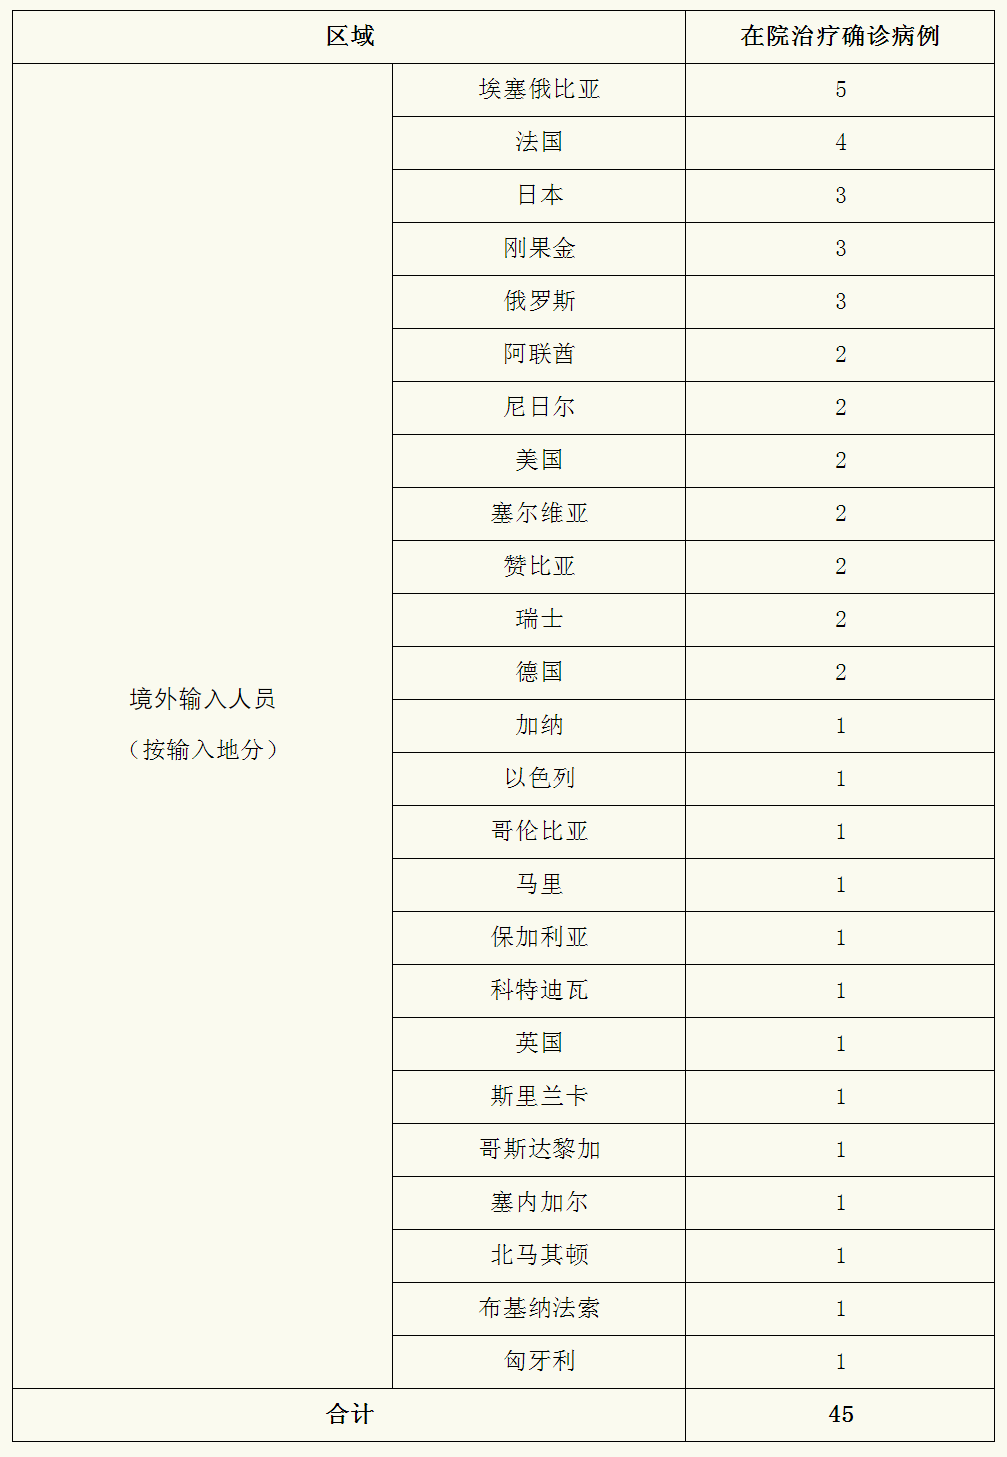 上海昨日新增3例境外输入病例，已追踪同航班密接者62人